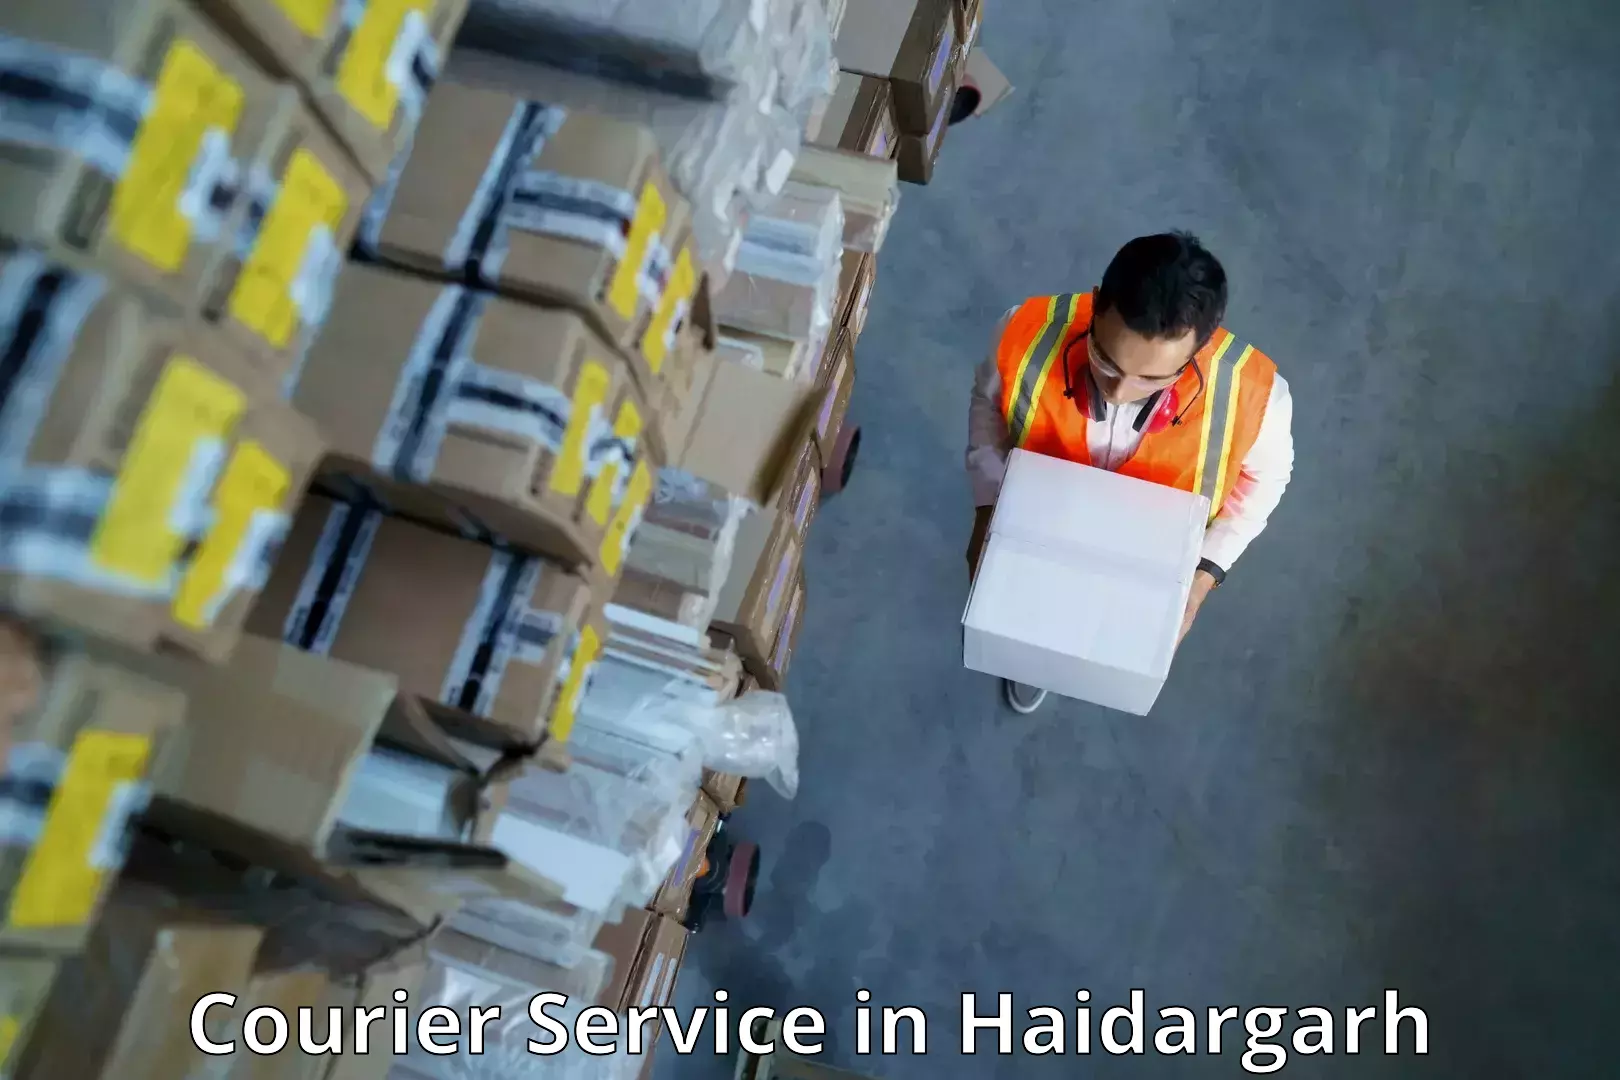 Custom courier packaging in Haidargarh